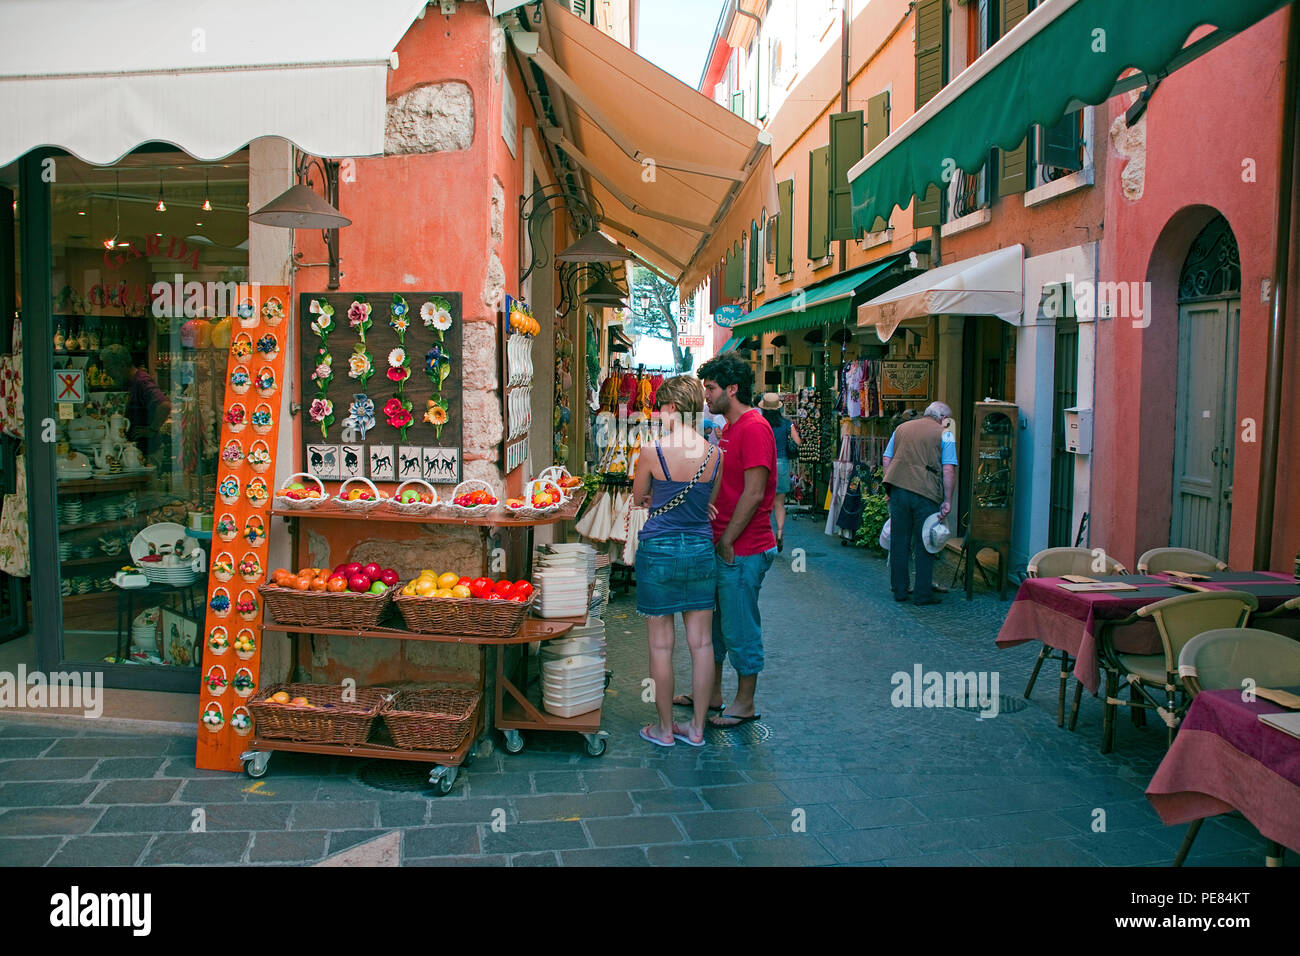 Touristen an einem Souvenirladen in der Altstadt von Garda, Gardasee, Lombardei, Italien | Tourist at a souvenir shop, old town of Garda, province Ver Stock Photo